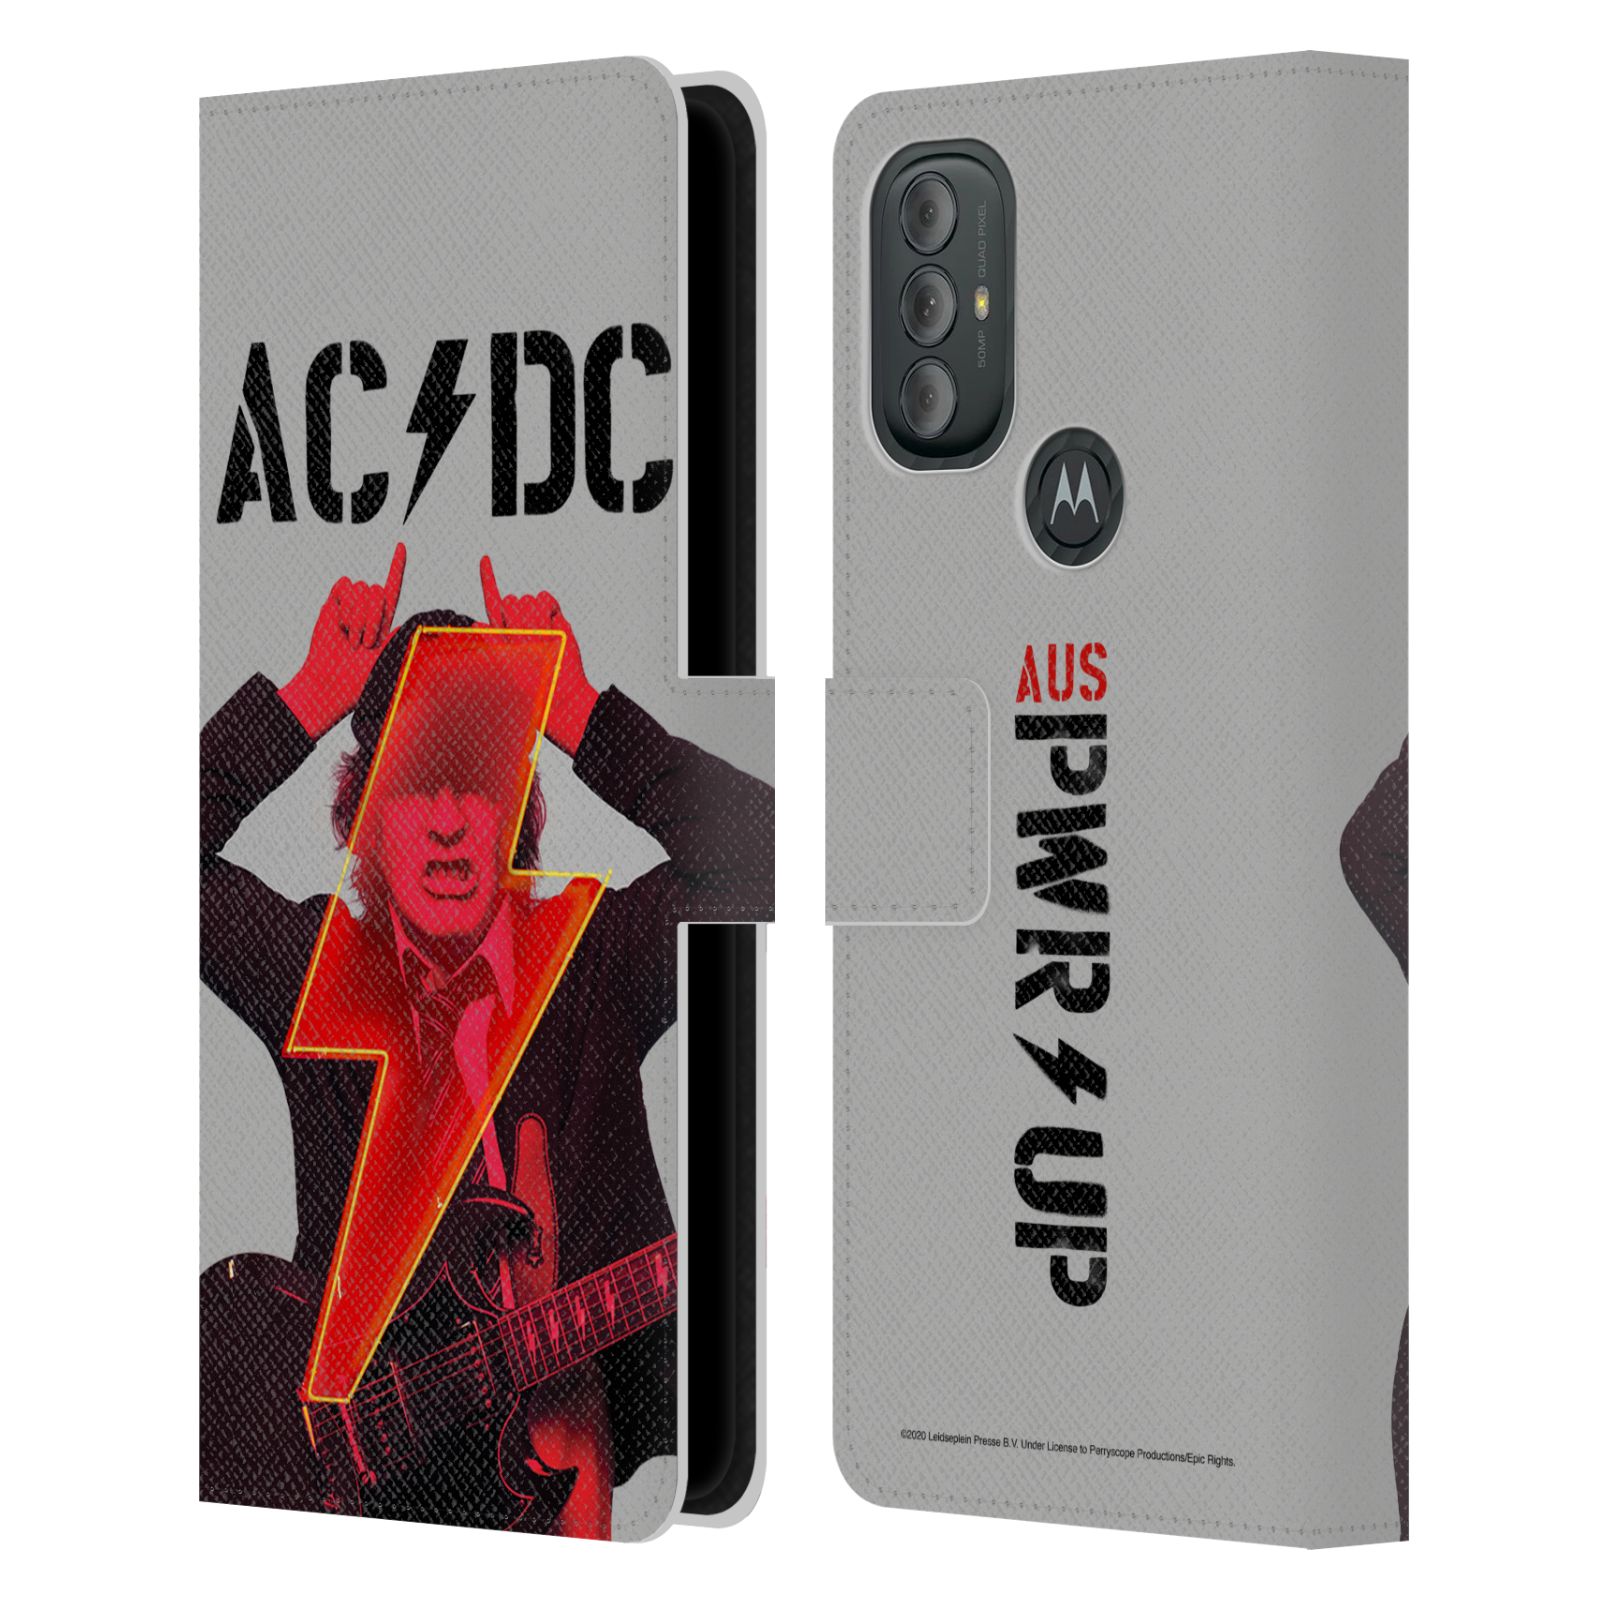 Pouzdro na mobil Motorola Moto G10 / G30 - HEAD CASE - Rocková skupin ACDC - Rudý ďábel